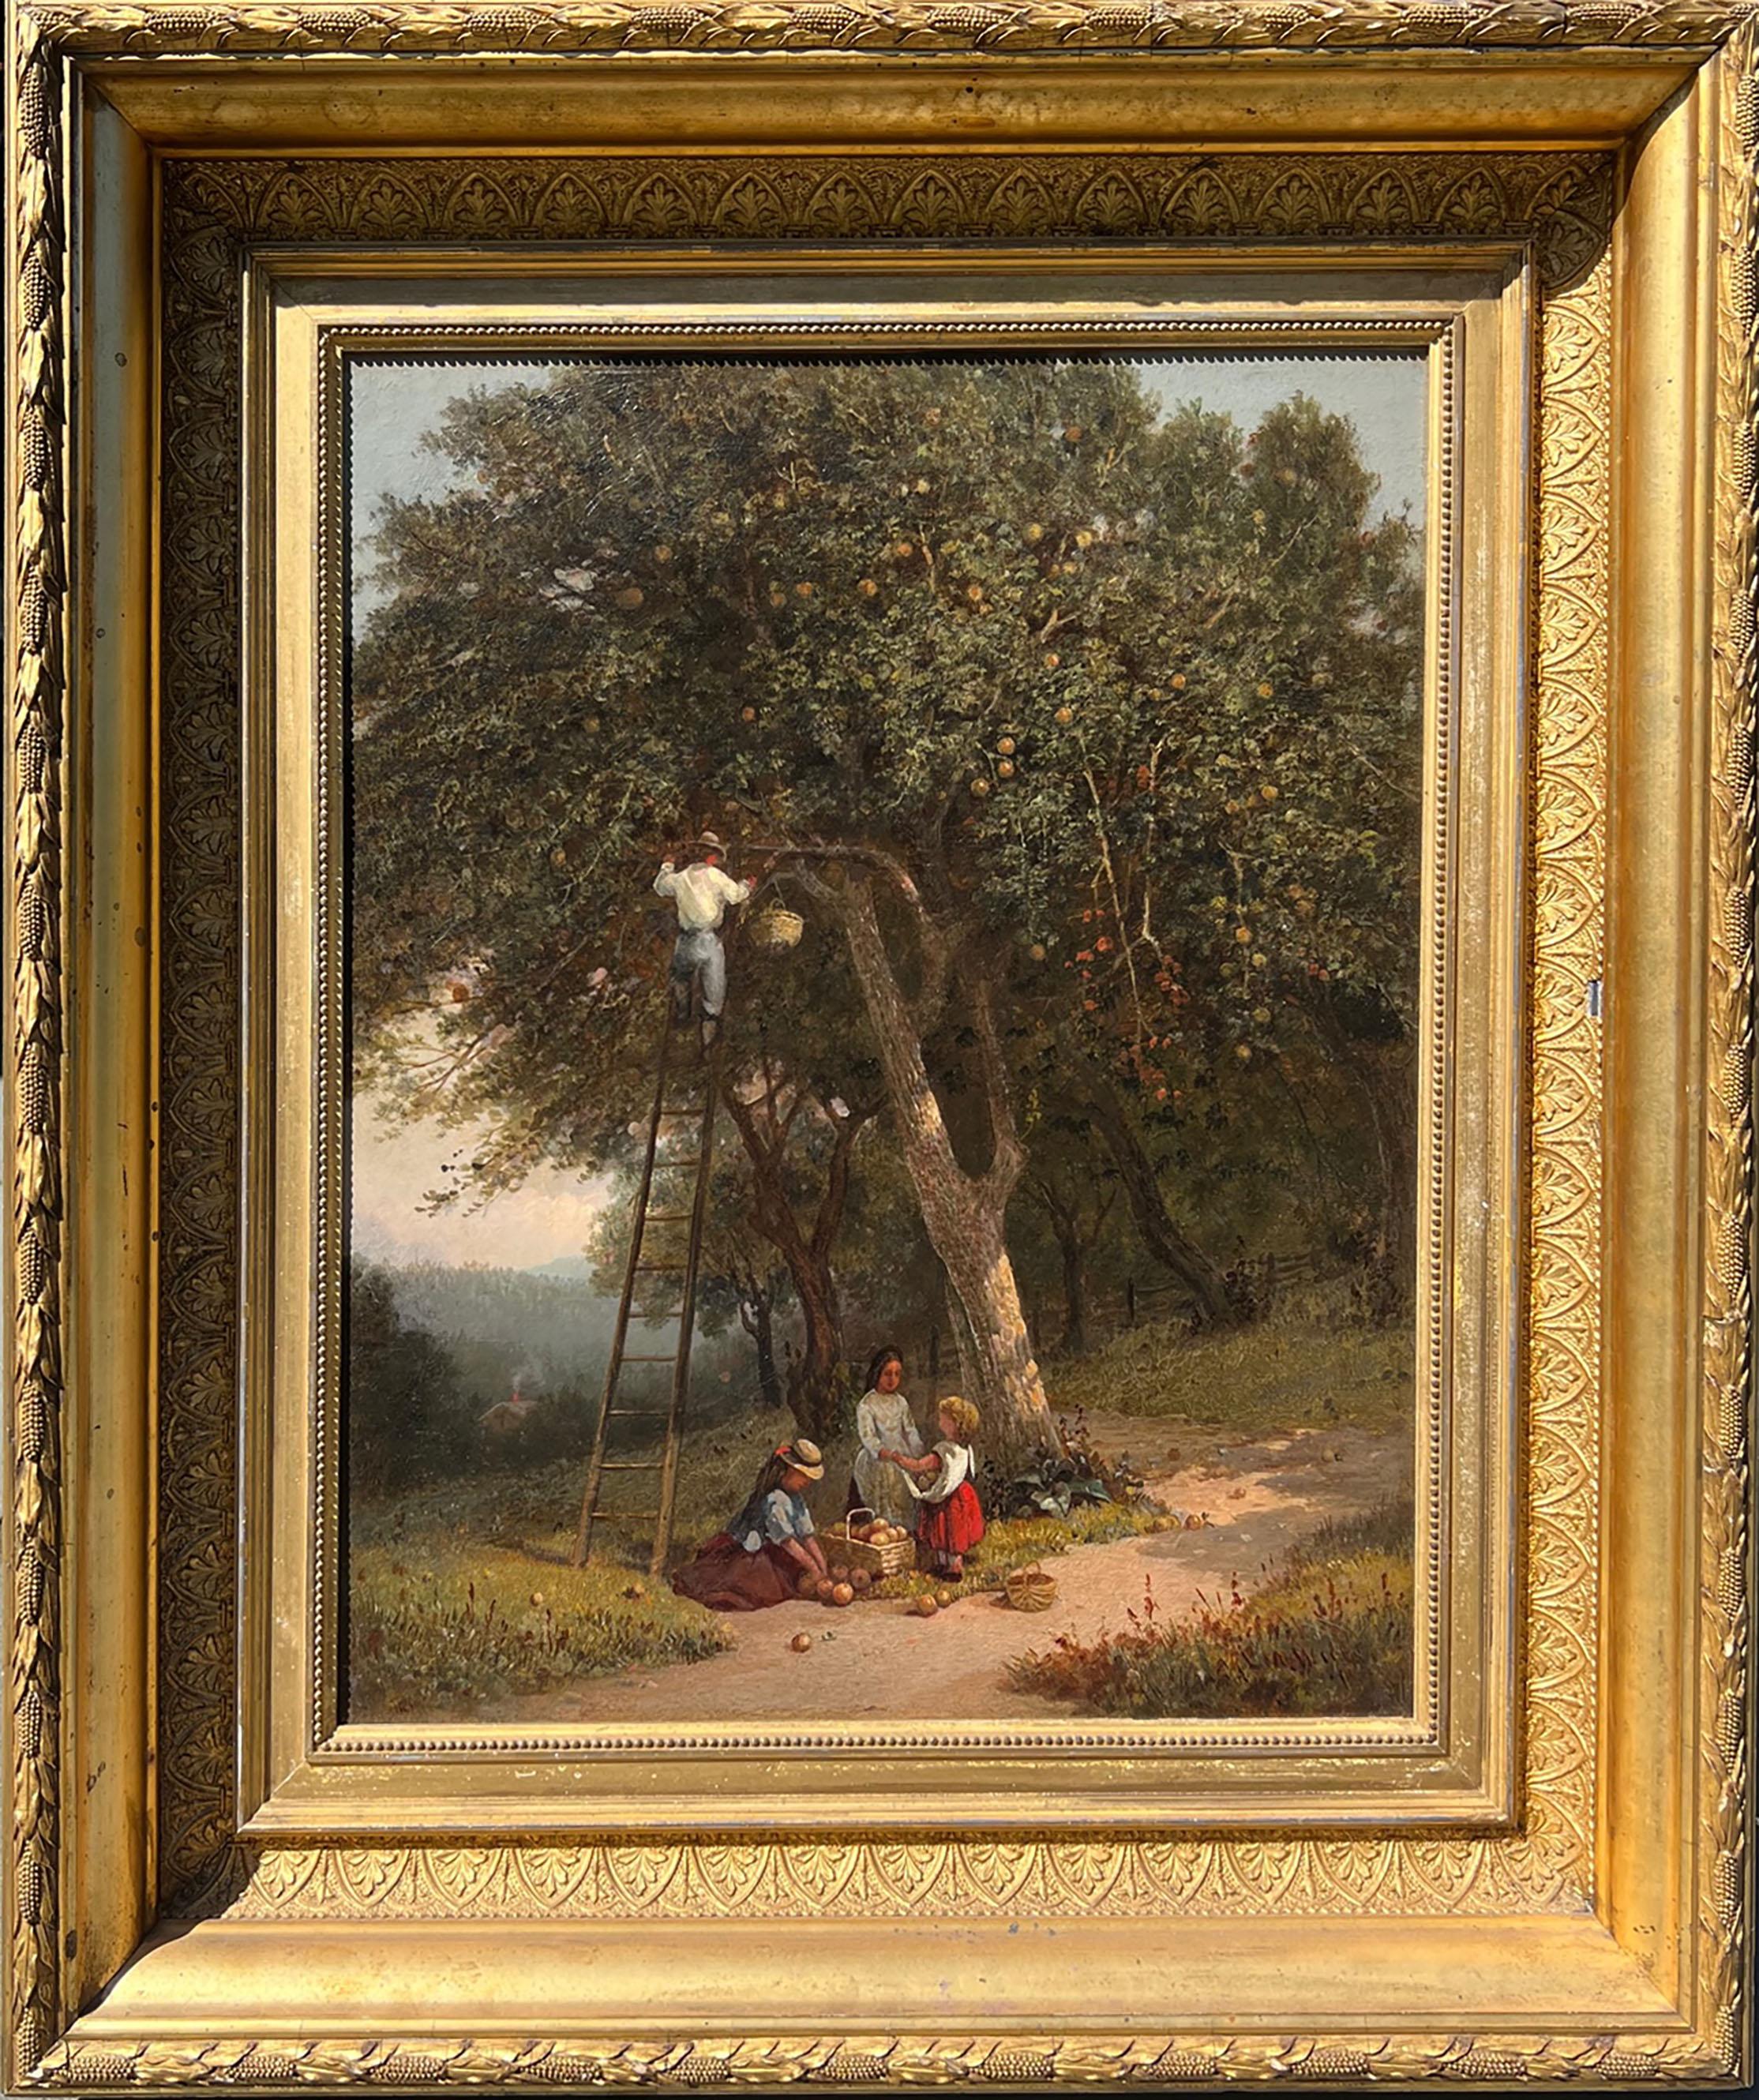 19th Century American Genre Painting by Lemuel Maynard Wiles (1826-1905) 